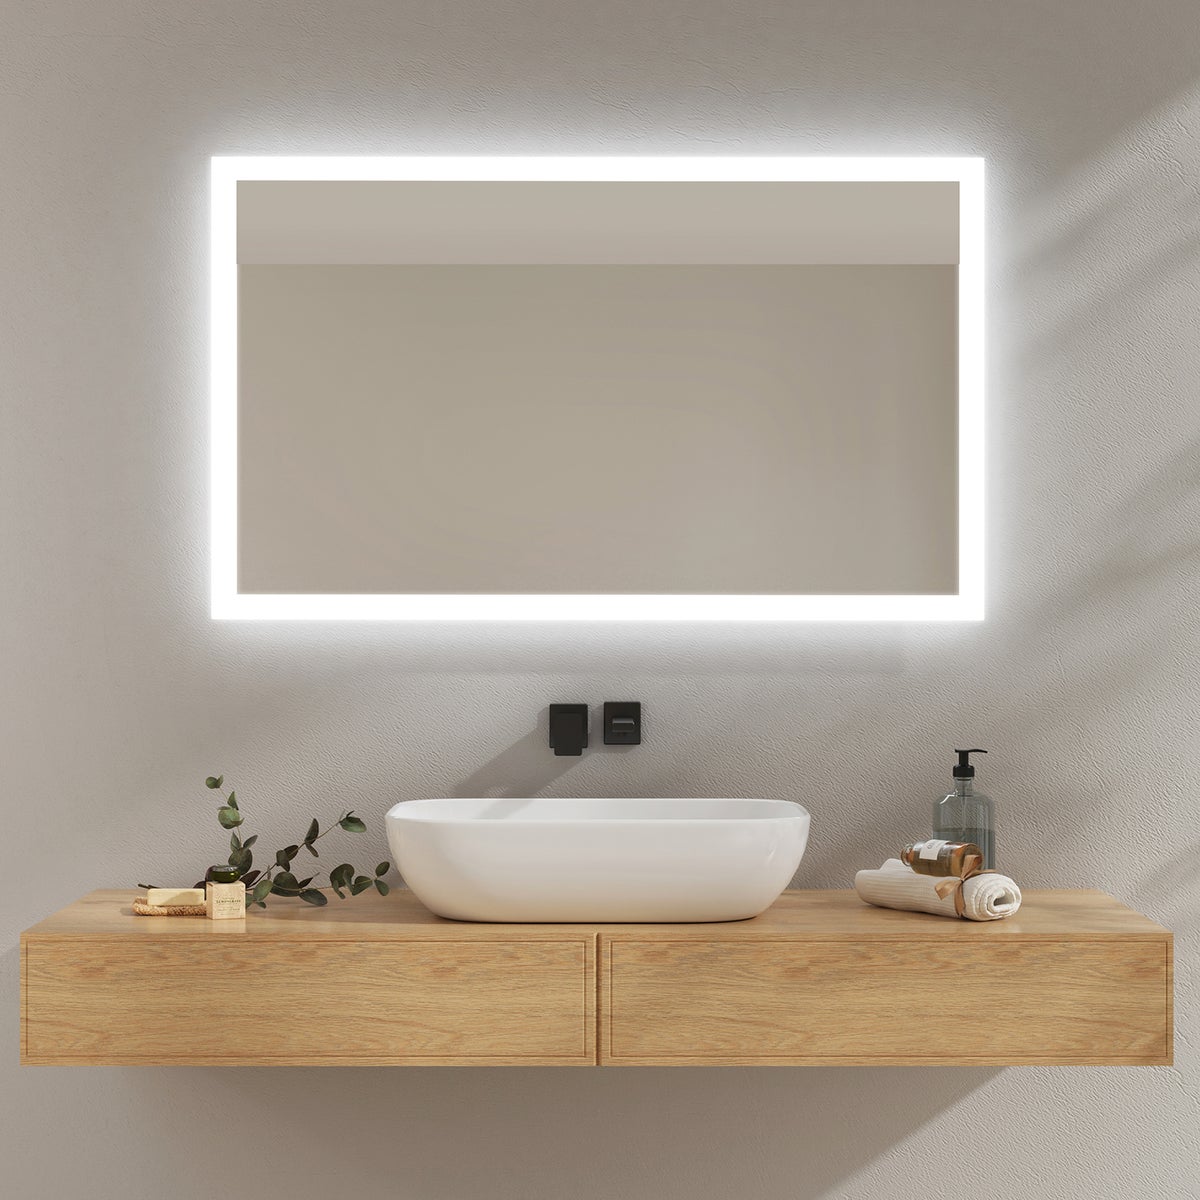 EMKE Badspiegel mit Beleuchtung, 100x60cm, Kaltweißes/Warmweißes Licht, Knopfschalter, Beschlagfrei